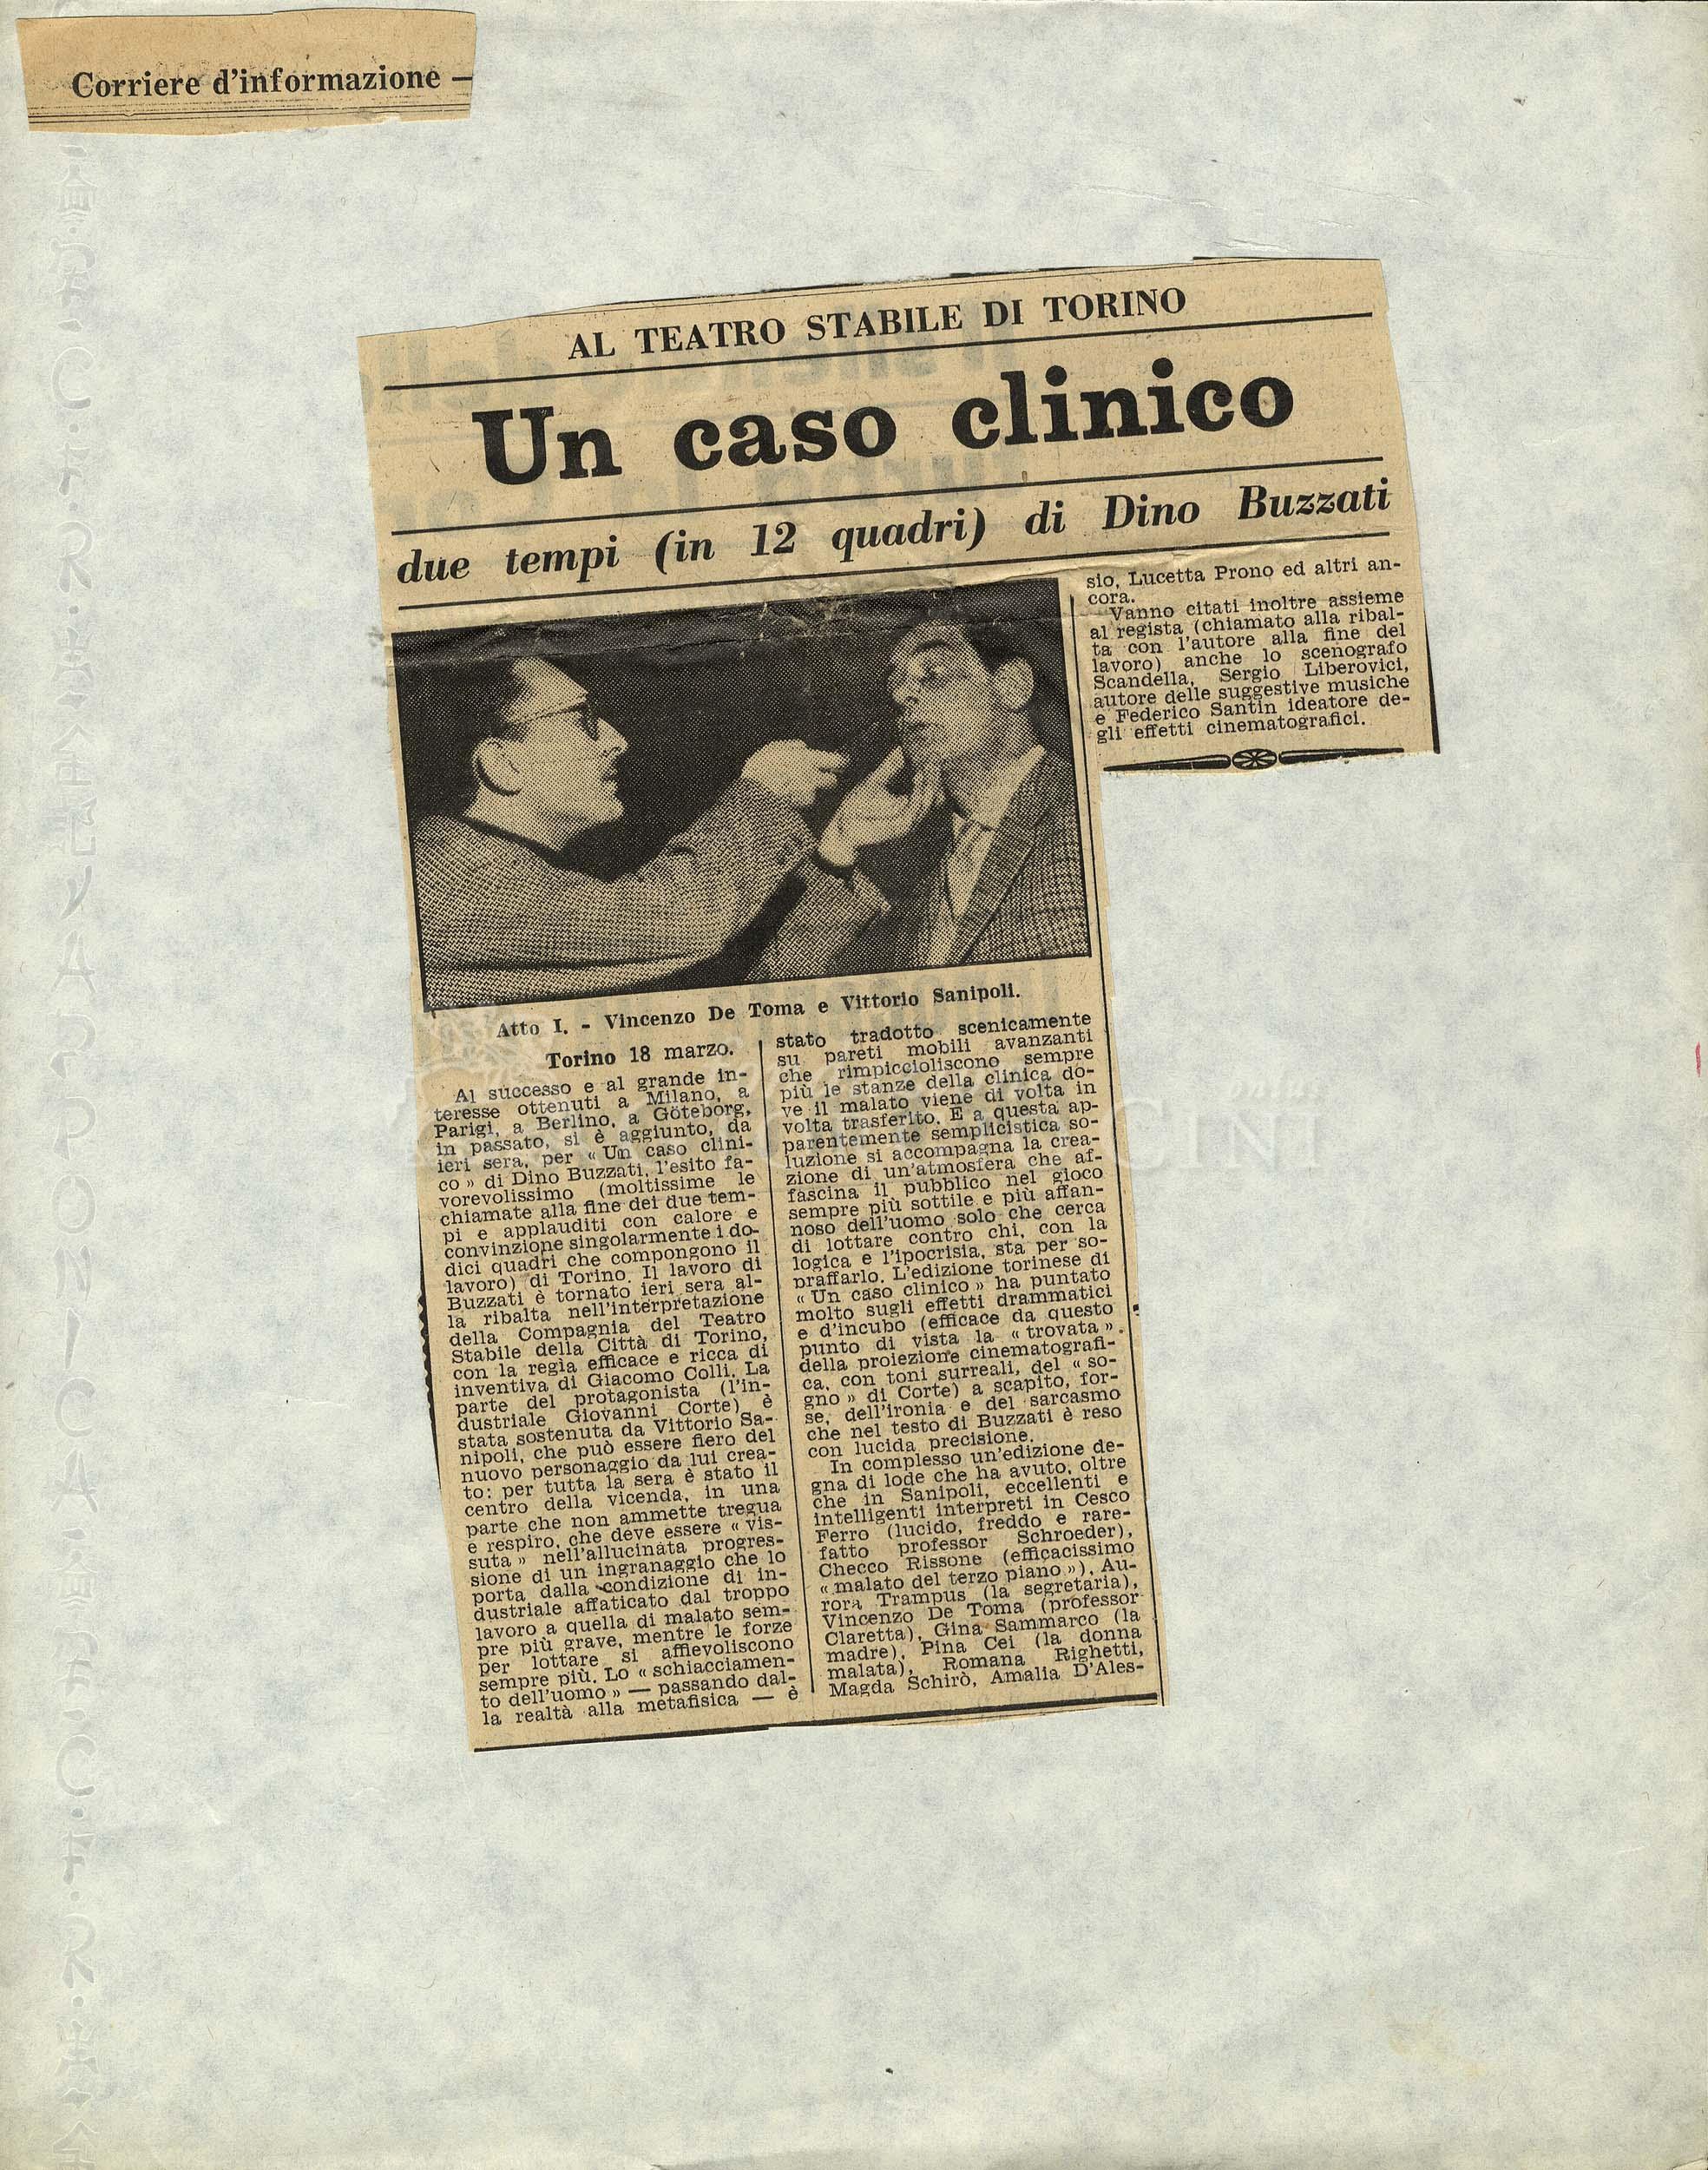 Un caso clinico. due tempi (in 12 quadri) di Dino Buzzati
				 : Al Teatro Stabile di Torino marzo 1958